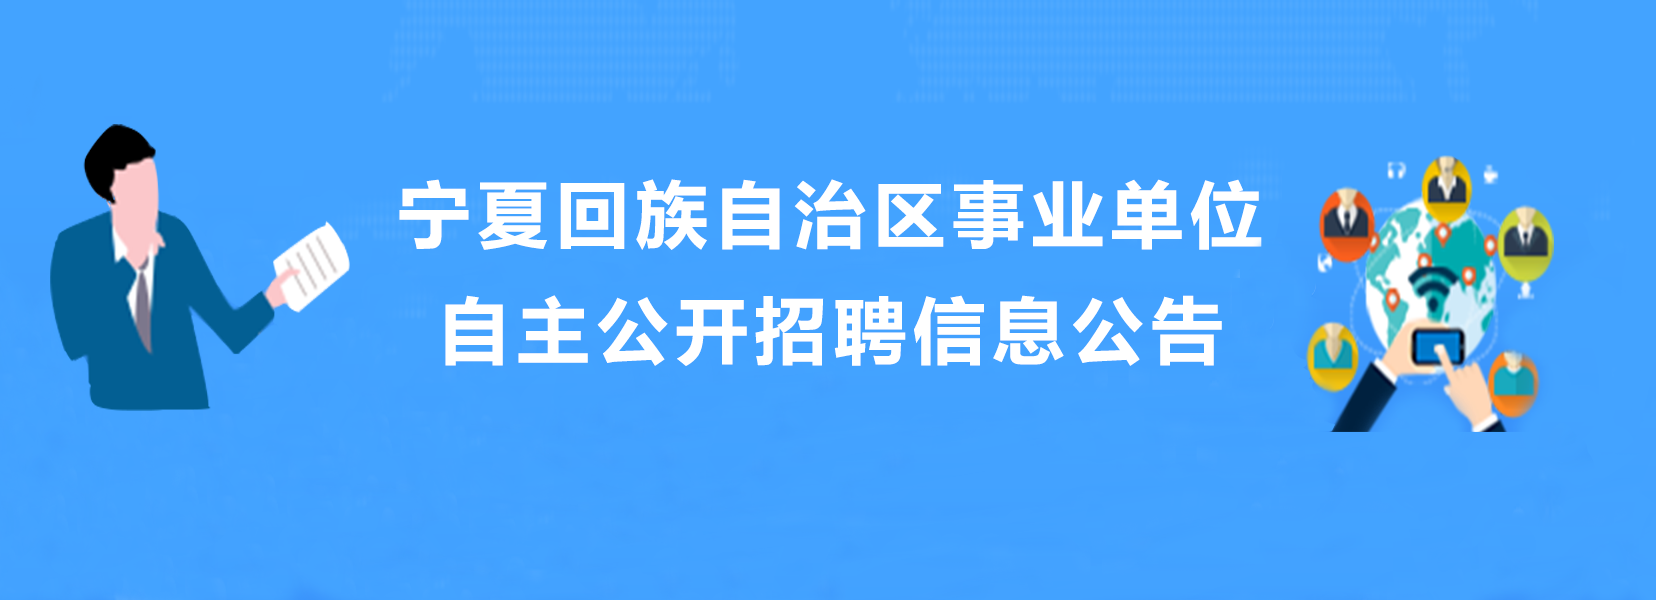 宁夏回族自治区事业事业单位自主公开招聘信息公告